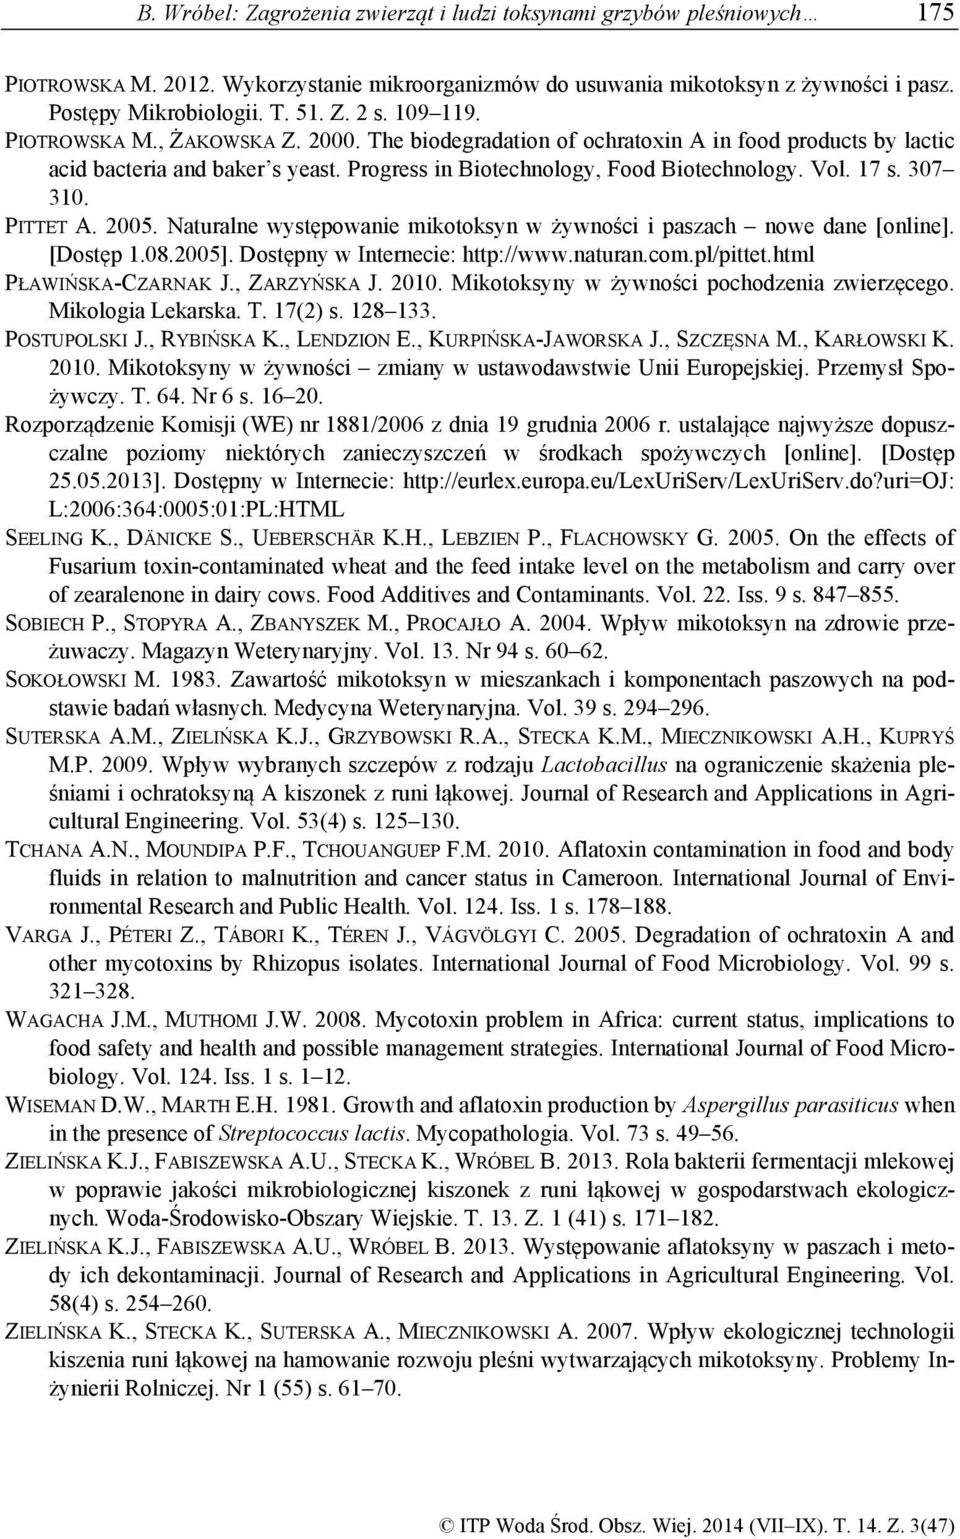 307 310. PITTET A. 2005. Naturalne występowanie mikotoksyn w żywności i paszach nowe dane [online]. [Dostęp 1.08.2005]. Dostępny w Internecie: http://www.naturan.com.pl/pittet.